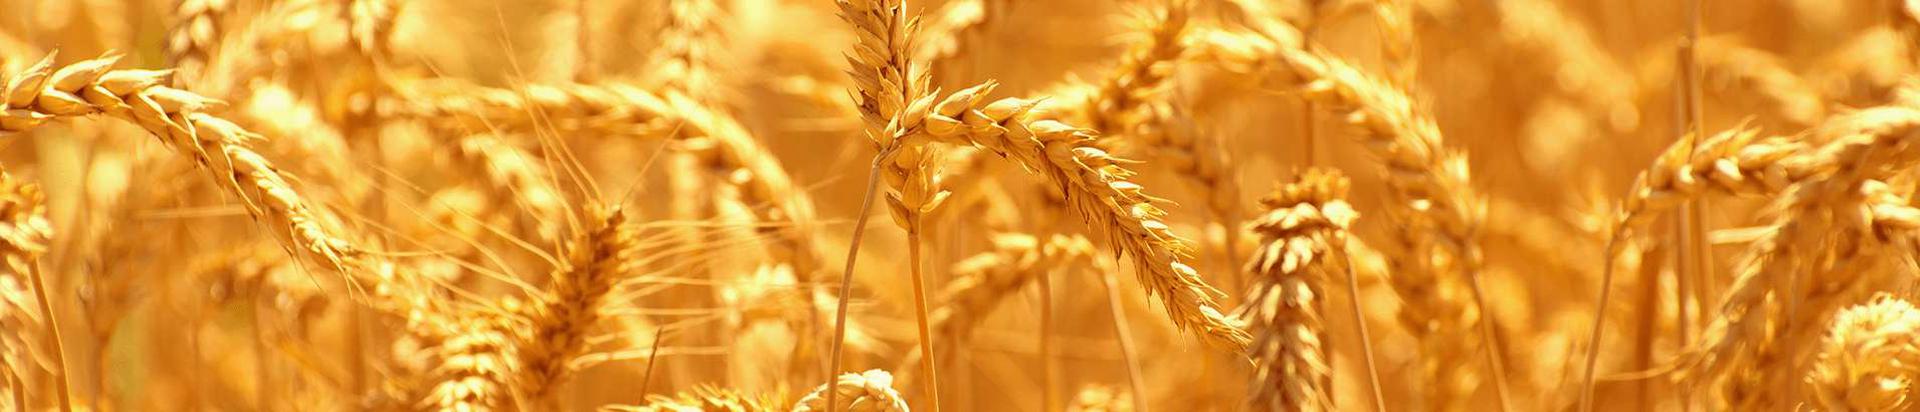 külmpressõlid, põllumajandustootjad, toiduainetetööstus, mahe täistera nisujahu, mahe nisukruup, mahe nisuhelbed, mahe nisu püülijahu, mahe nisu sõrejahu, mahe nisumanna, mahe nisukliid